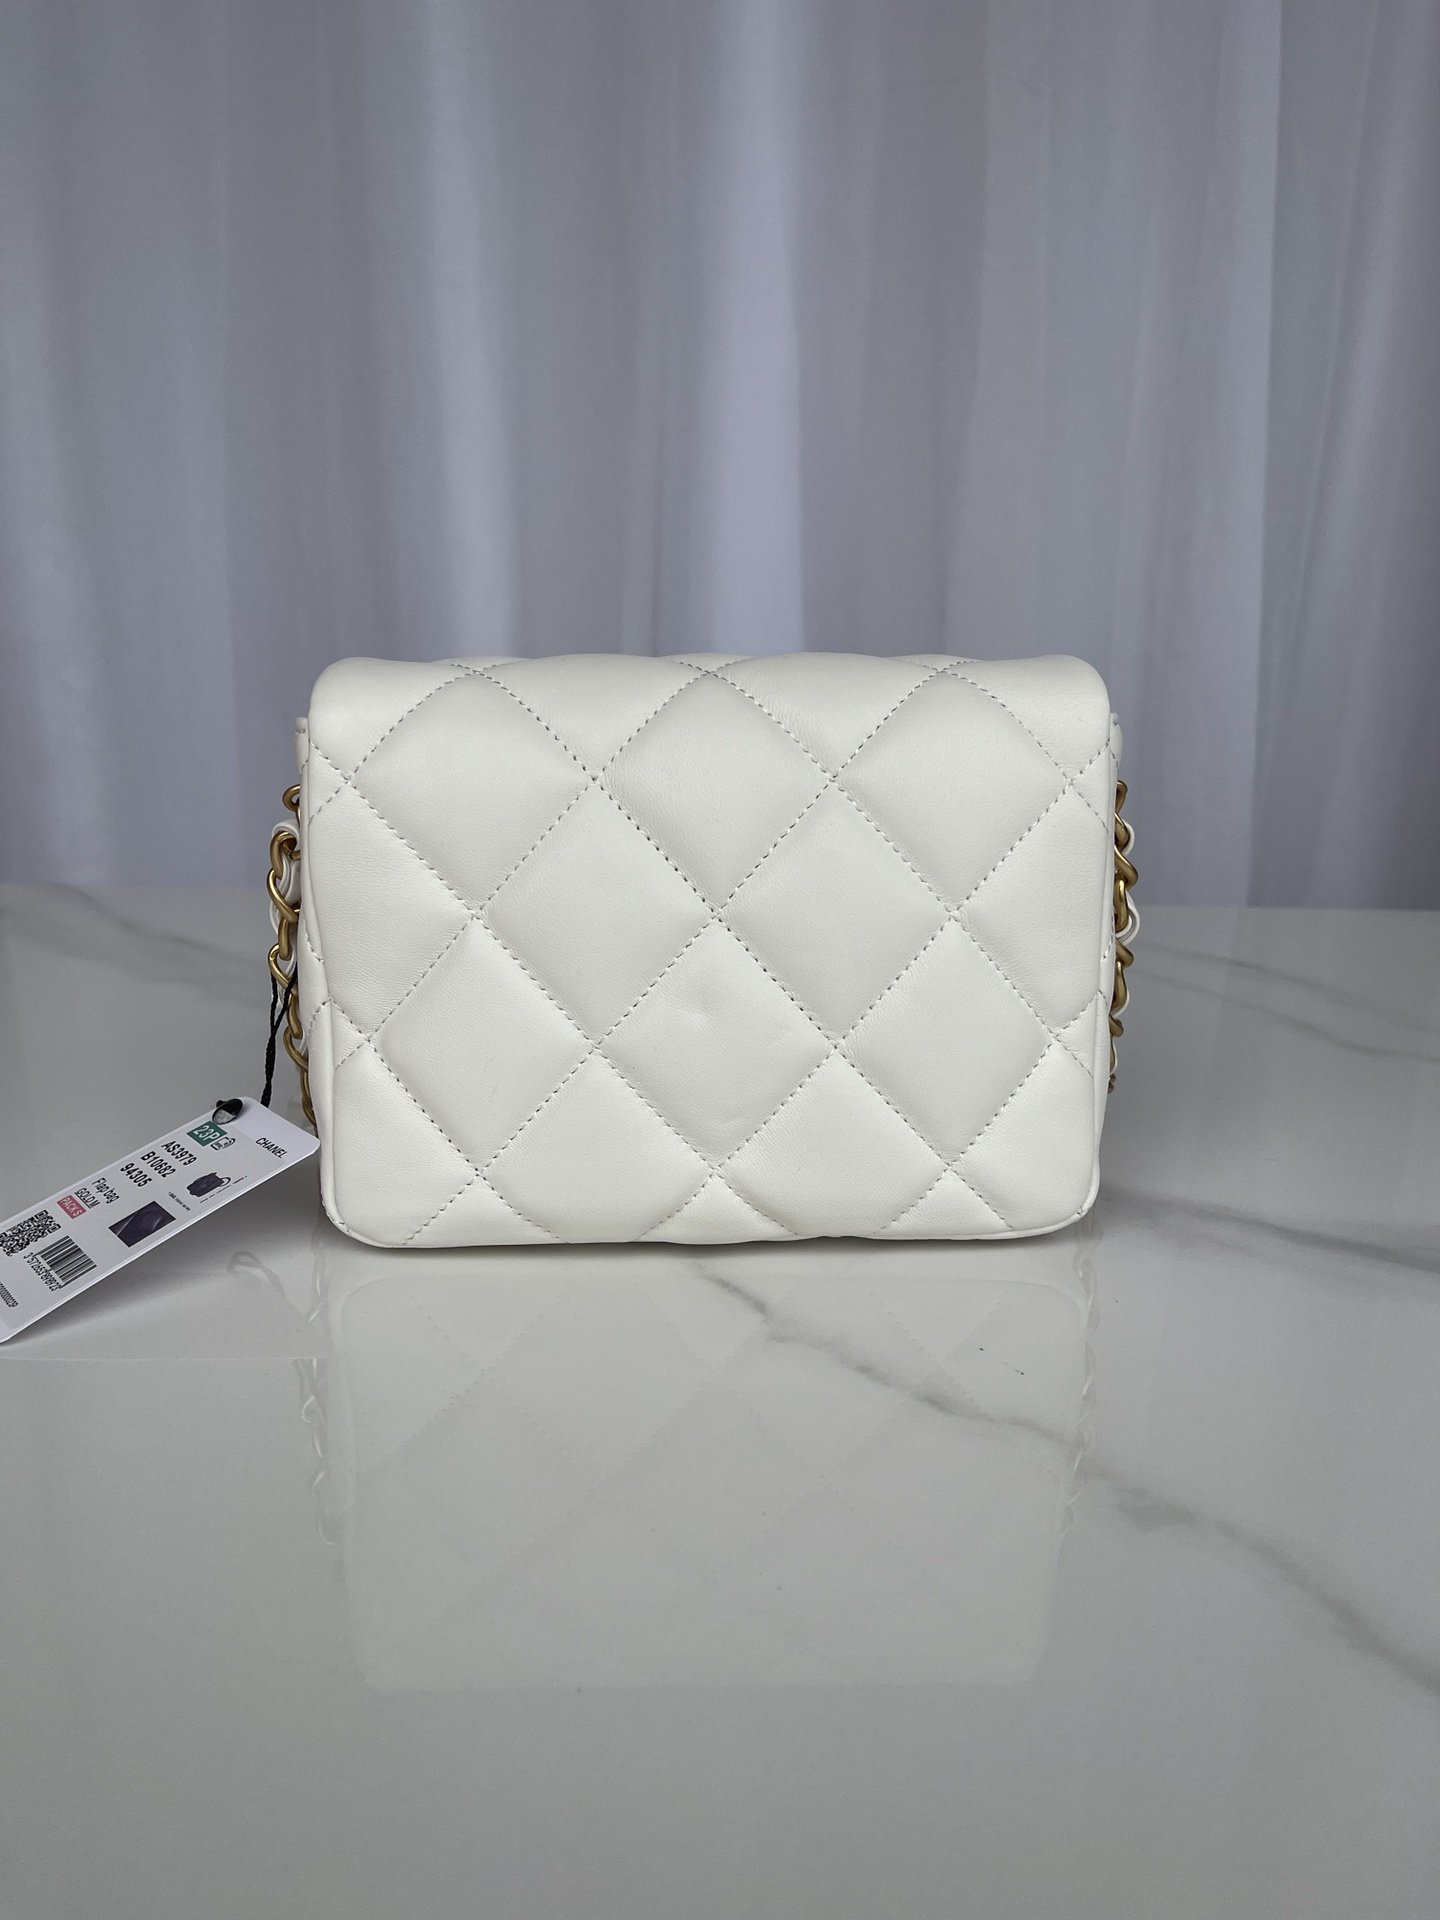 A bag Mini Flap Bag AS3979 18 cm, white фото 3